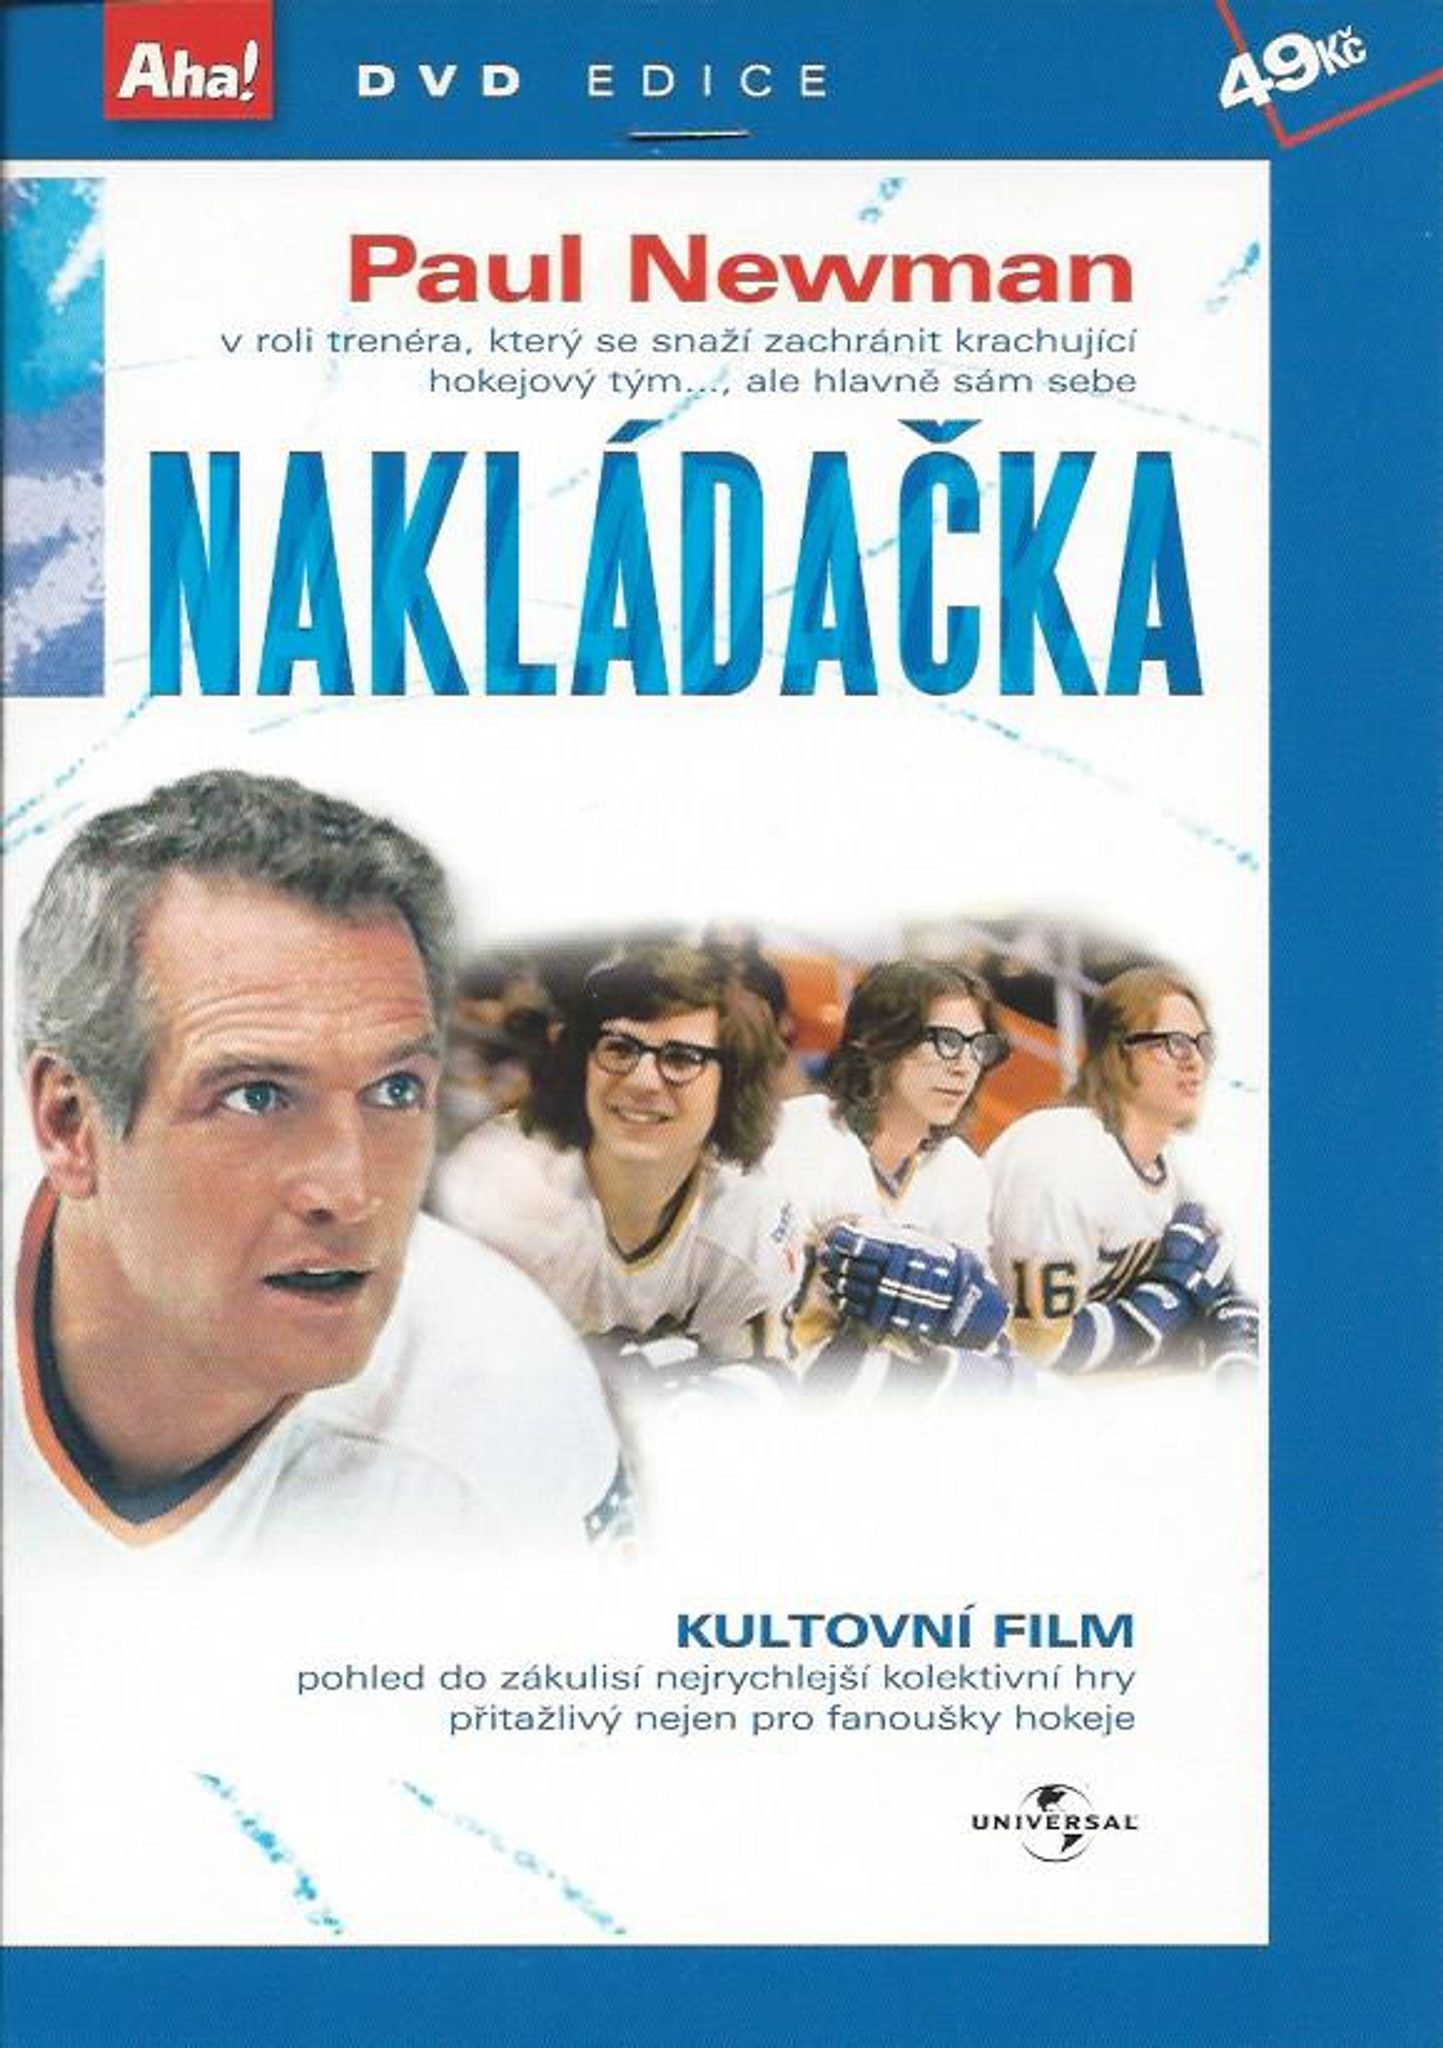 DVD Nakldaka - Kliknutm na obrzek zavete